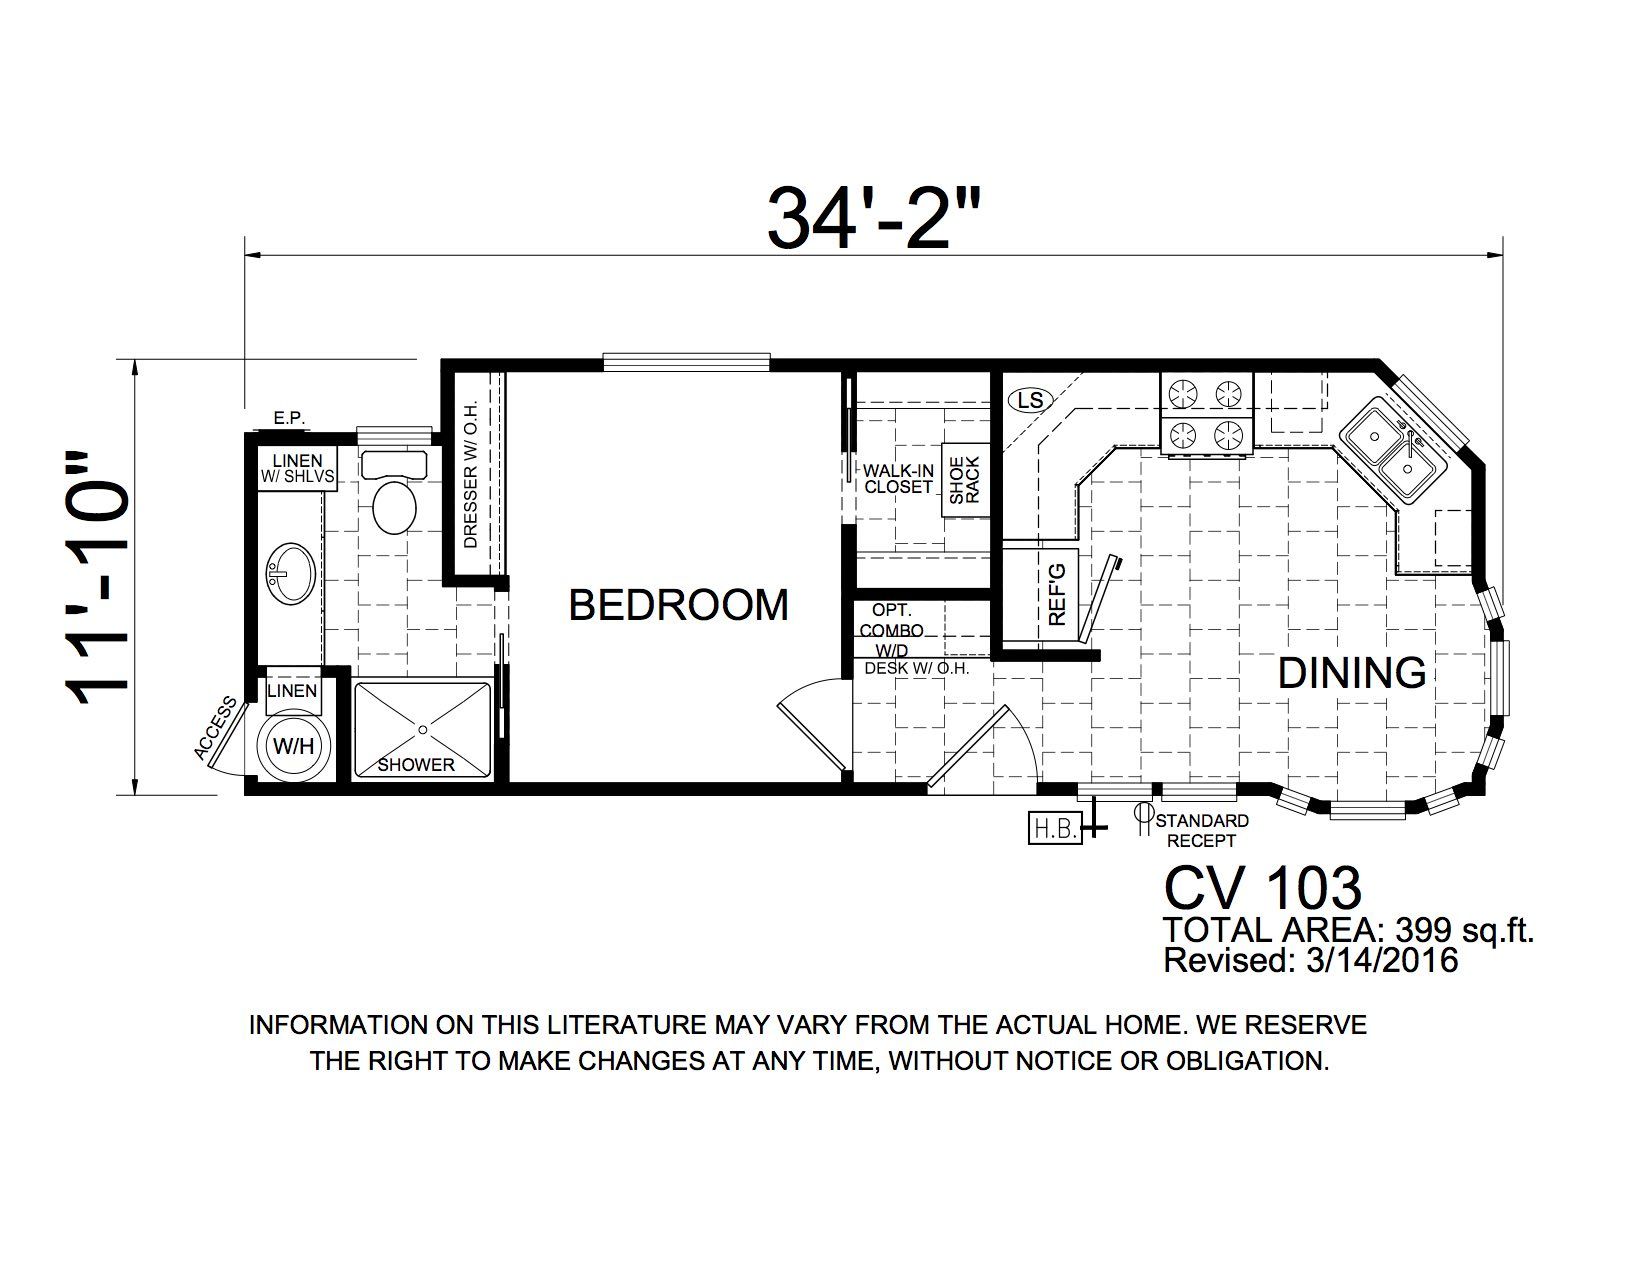 Homes Direct Modular Homes - Model DV103 - Floorplan